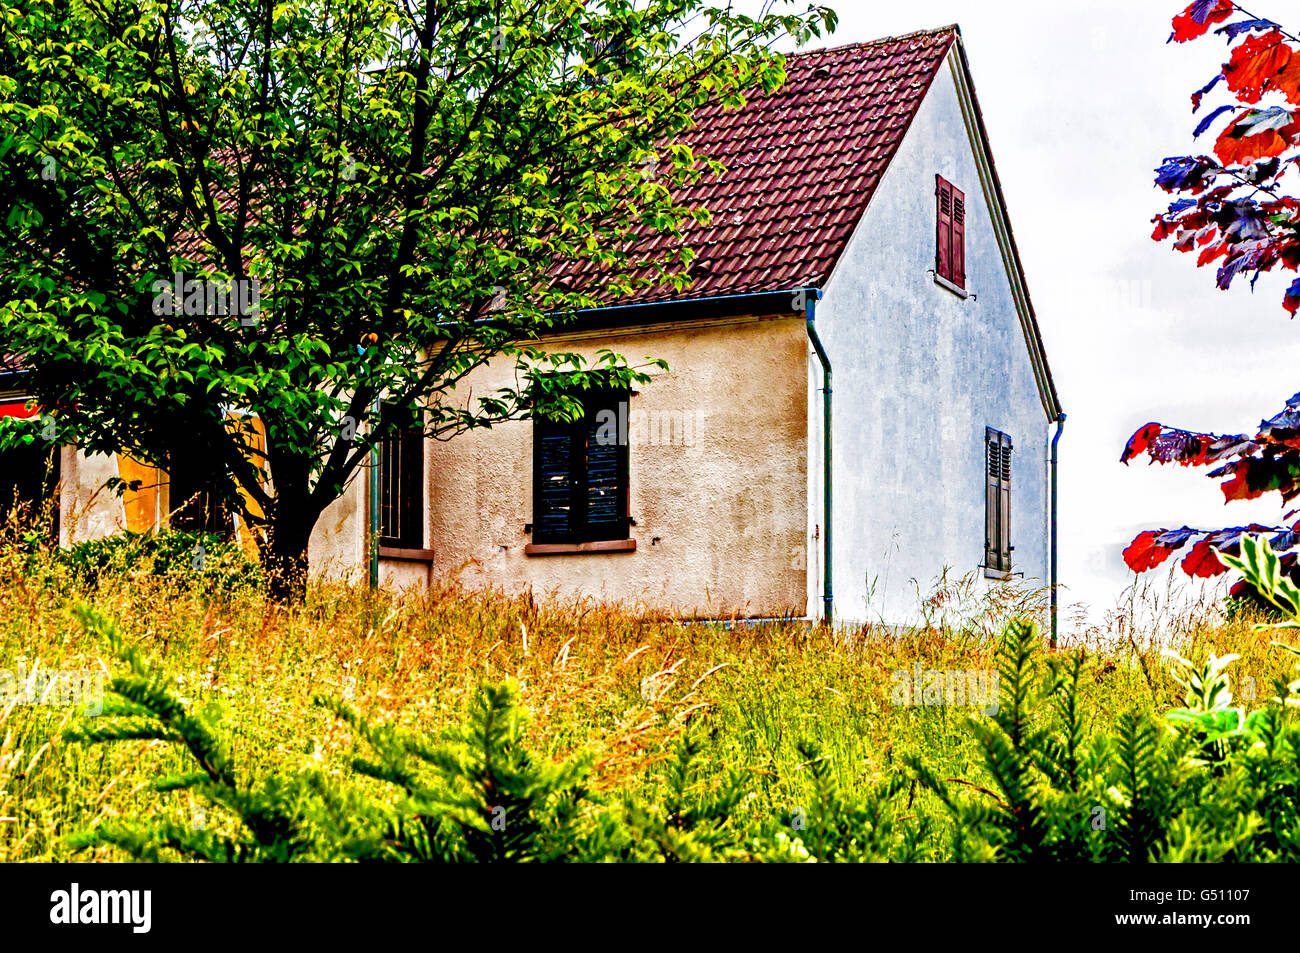 House with closed window shutter; haus mit geschlossenen fensterläden Stock Photo